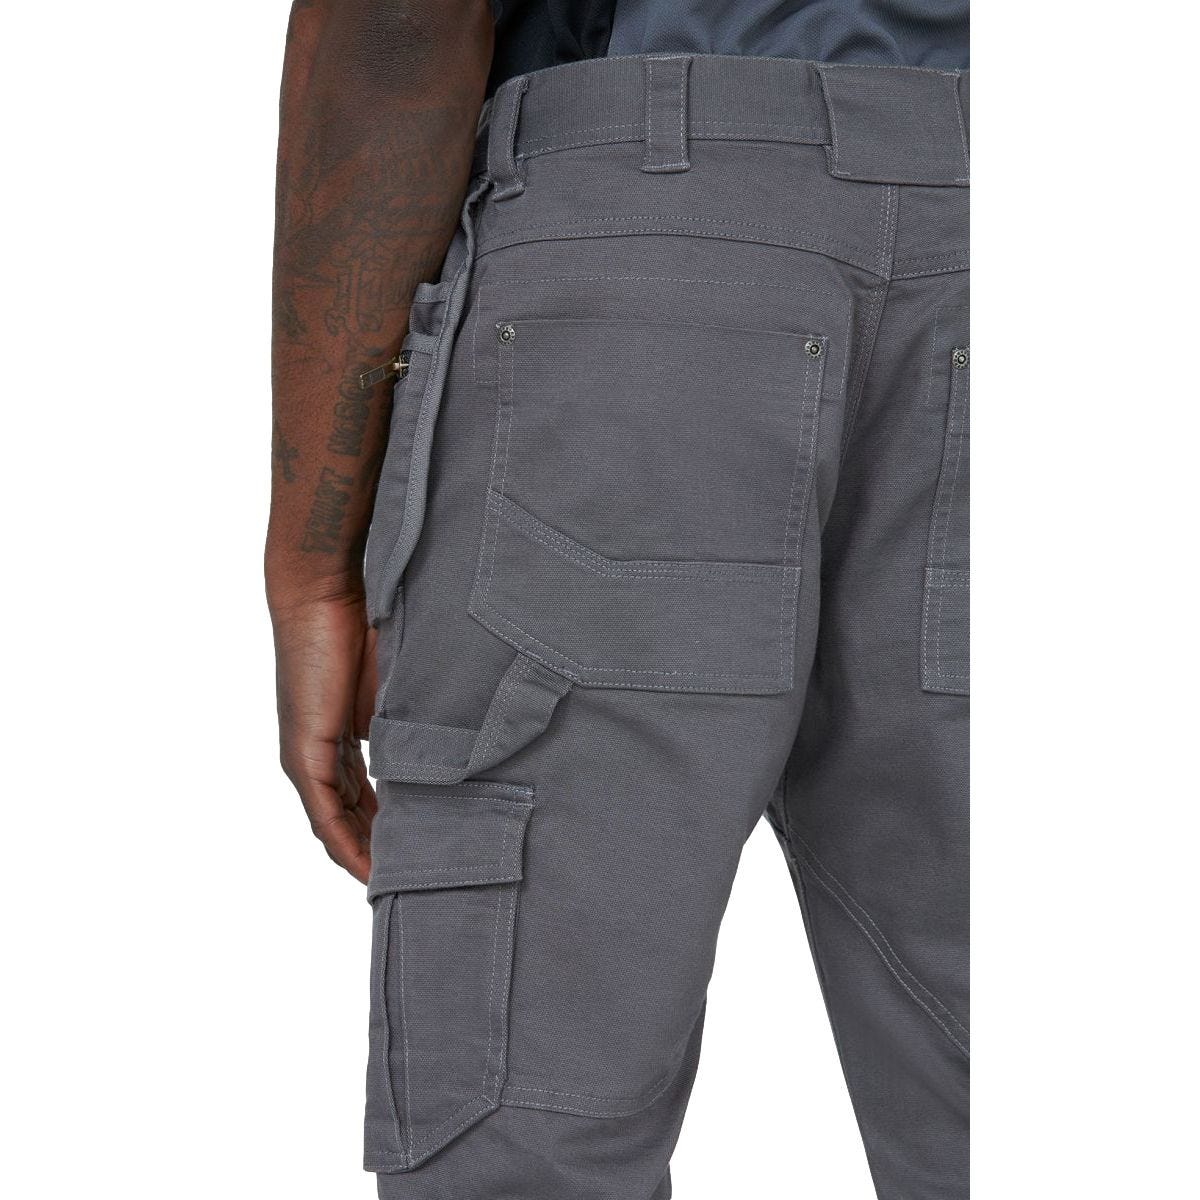 Pantalon Universal Flex Gris et noir - Dickies - Taille 50 4